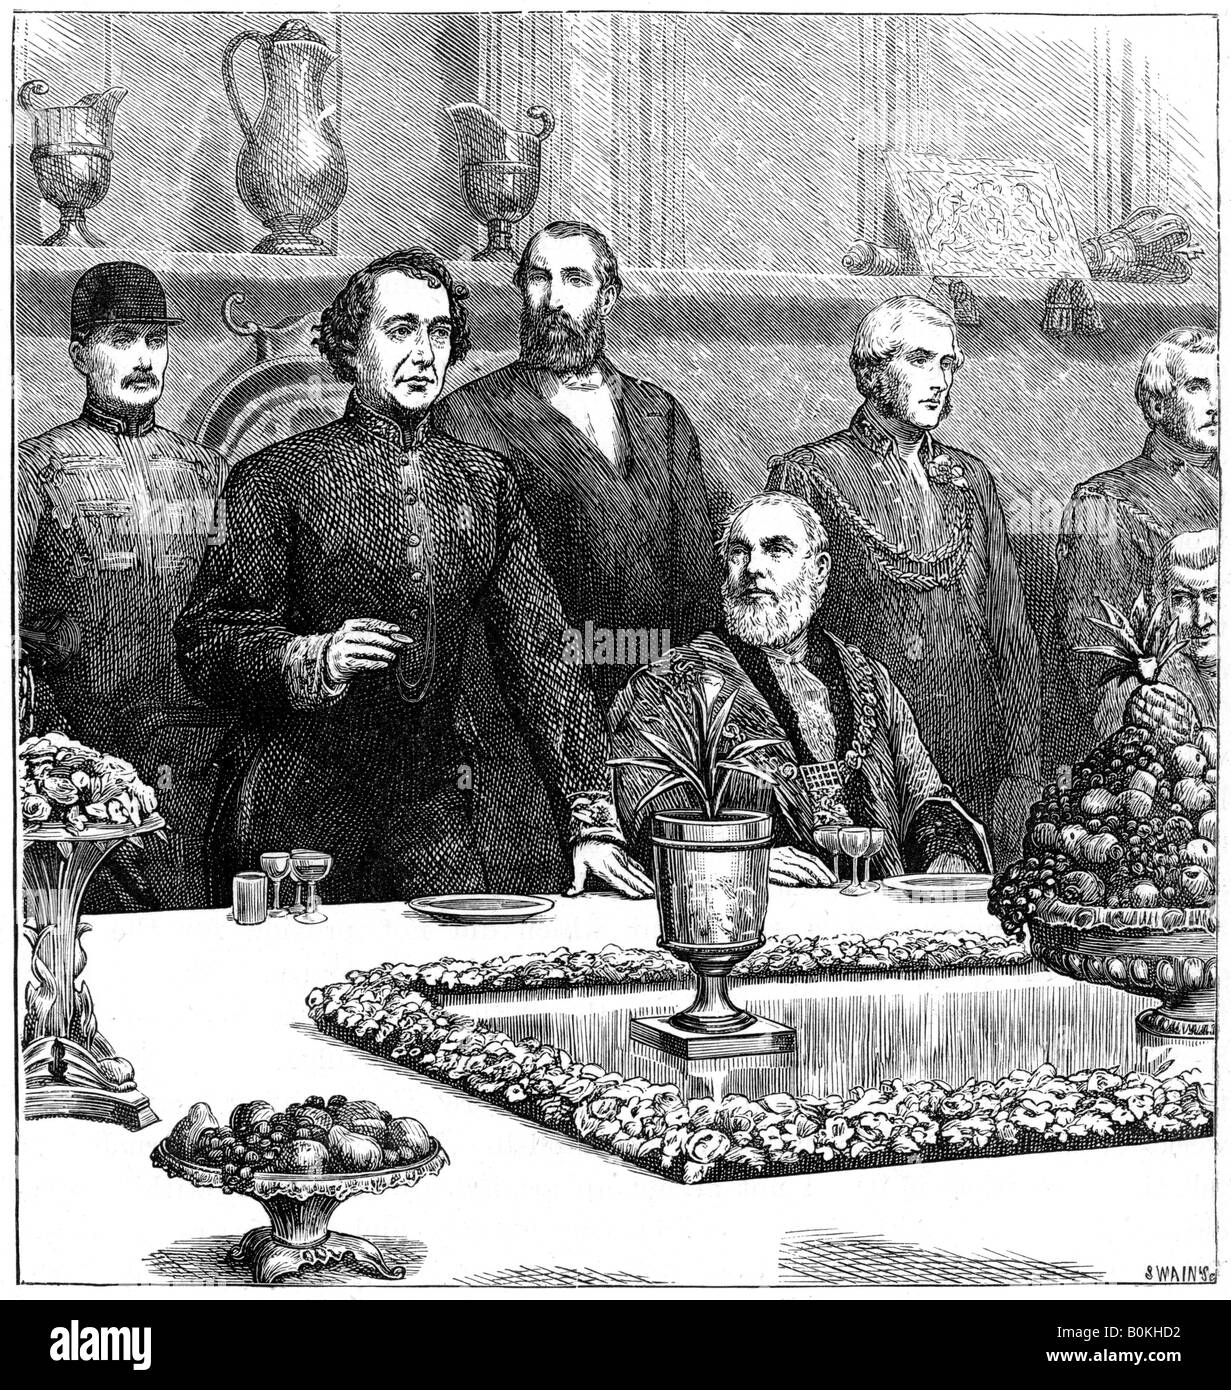 Lord Beaconsfield en un banquete en el Guildhall, de finales del siglo XIX, (1900). Artista: Swain Foto de stock